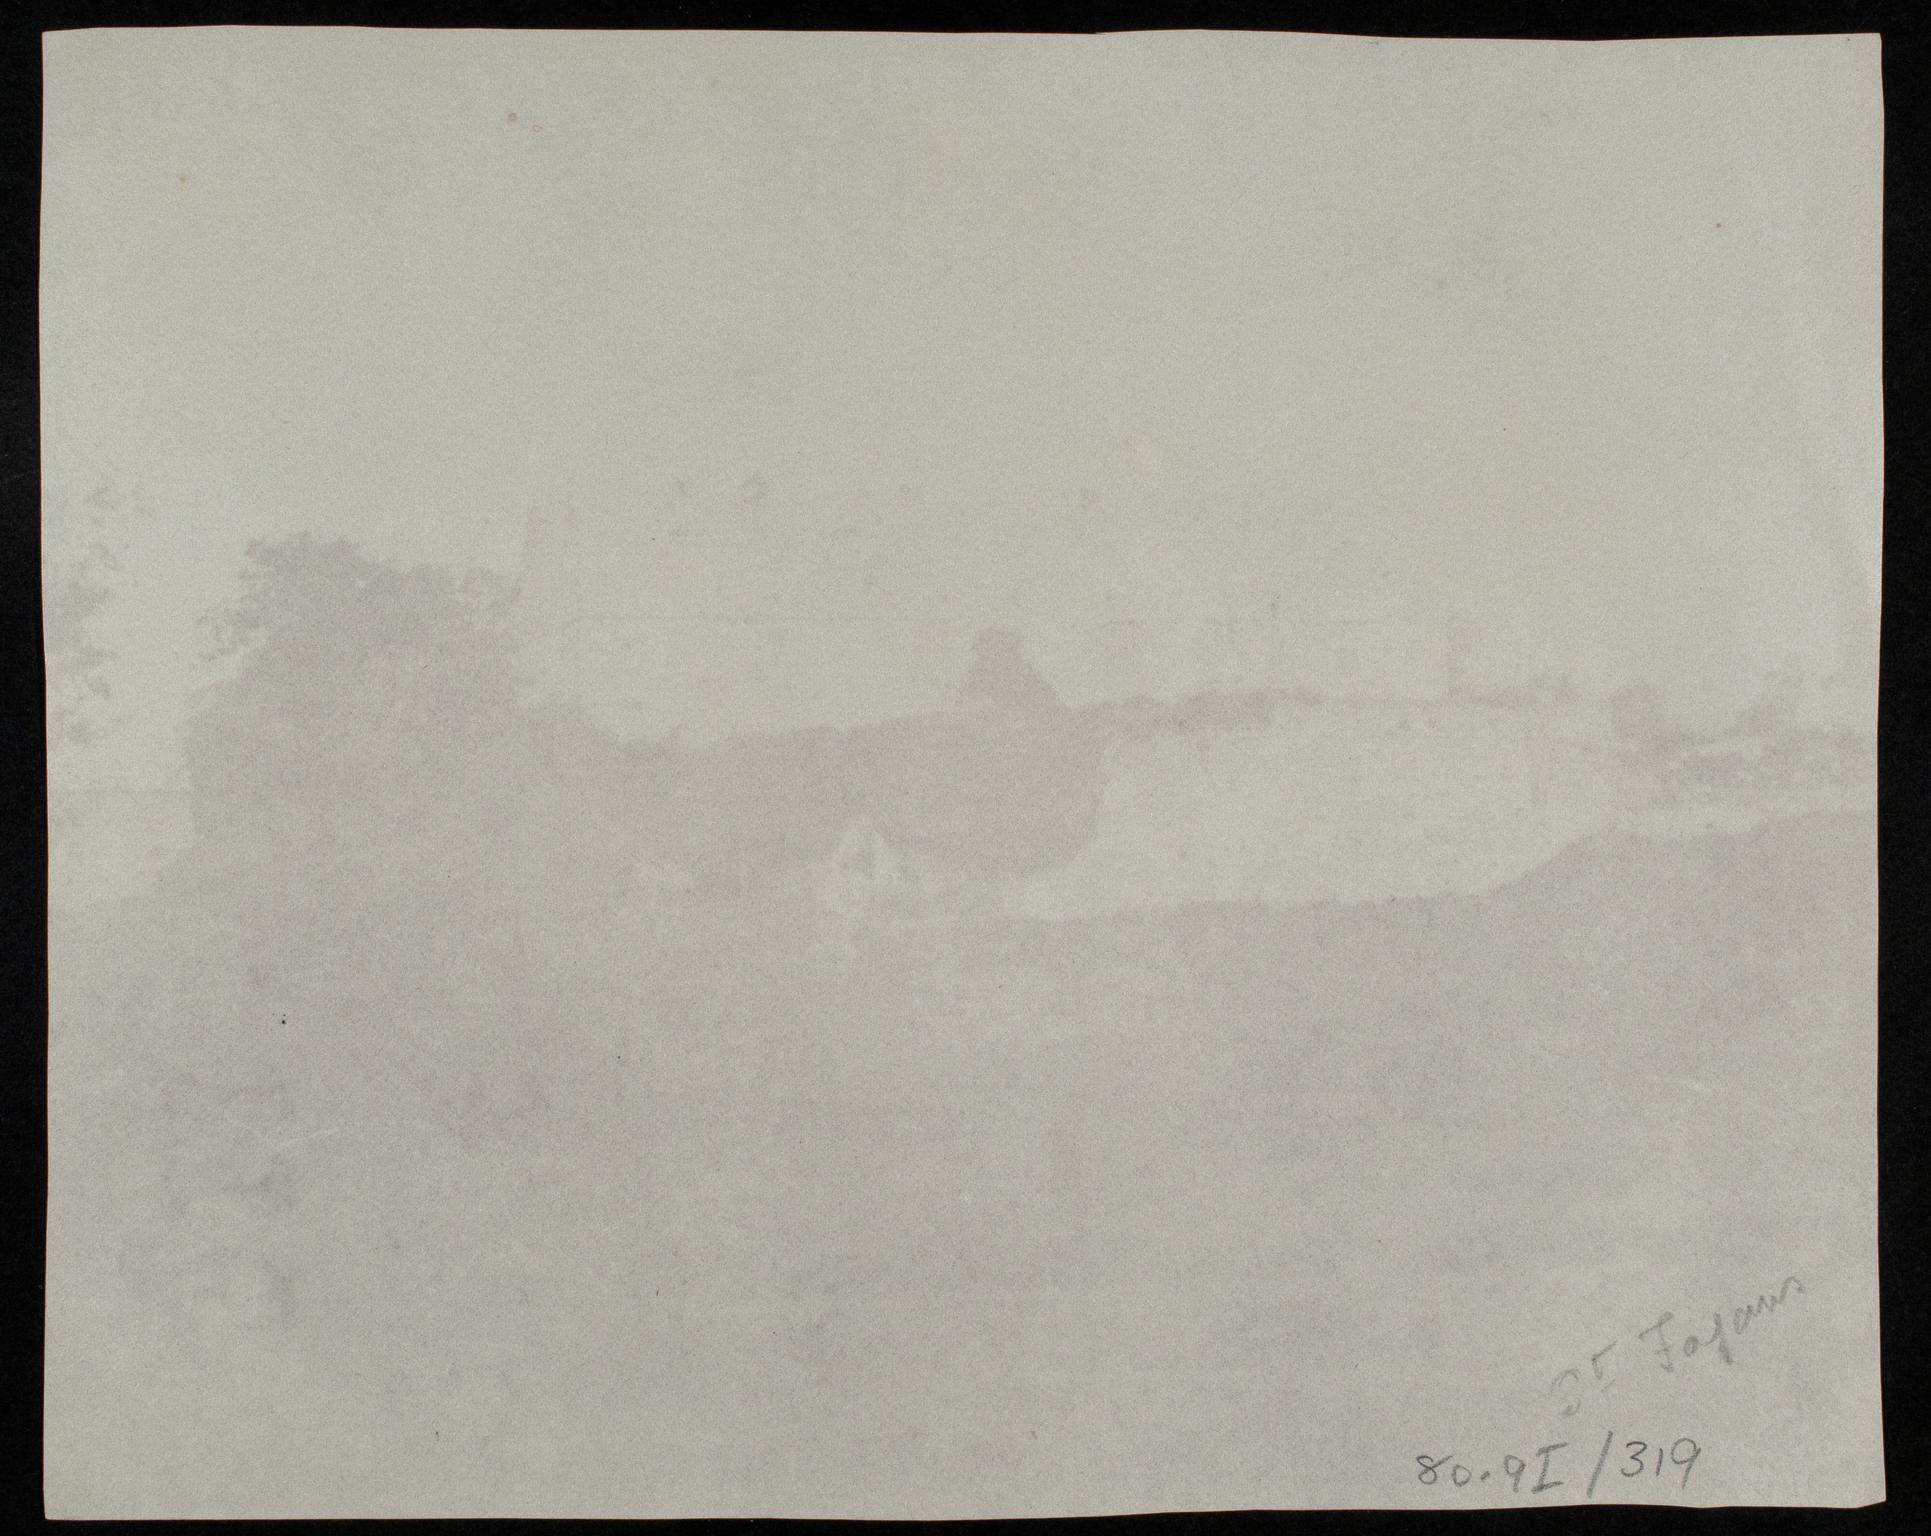 St Fagans Castle, before restoration, photograph